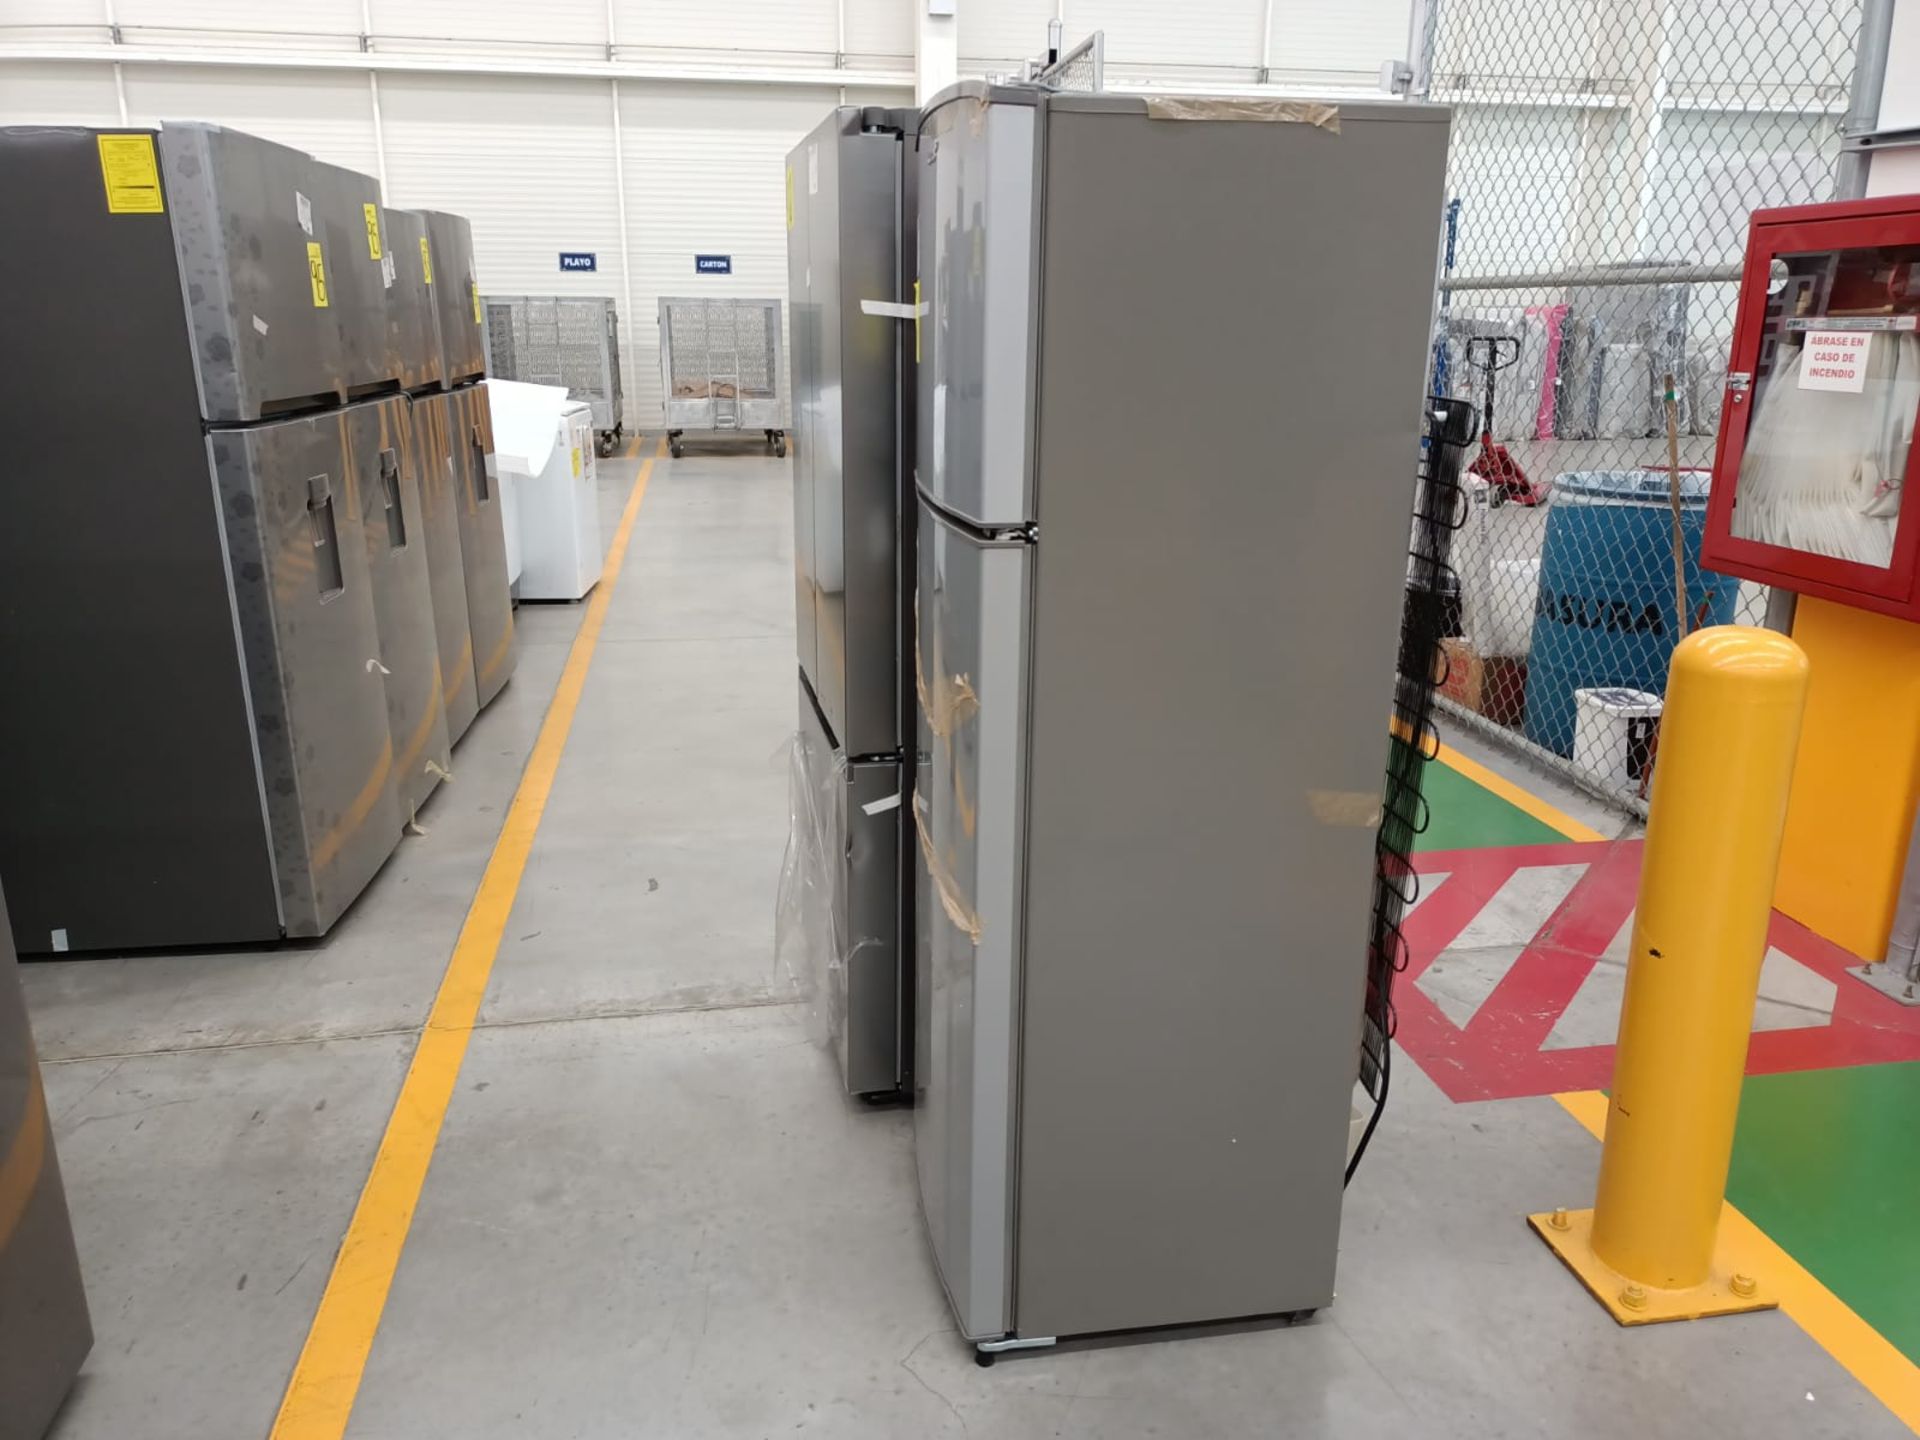 Lote de 2 refrigeradores incluye: 1 refrigerador marca Samsung, modelo RF22A4010S9/EM - Image 39 of 51